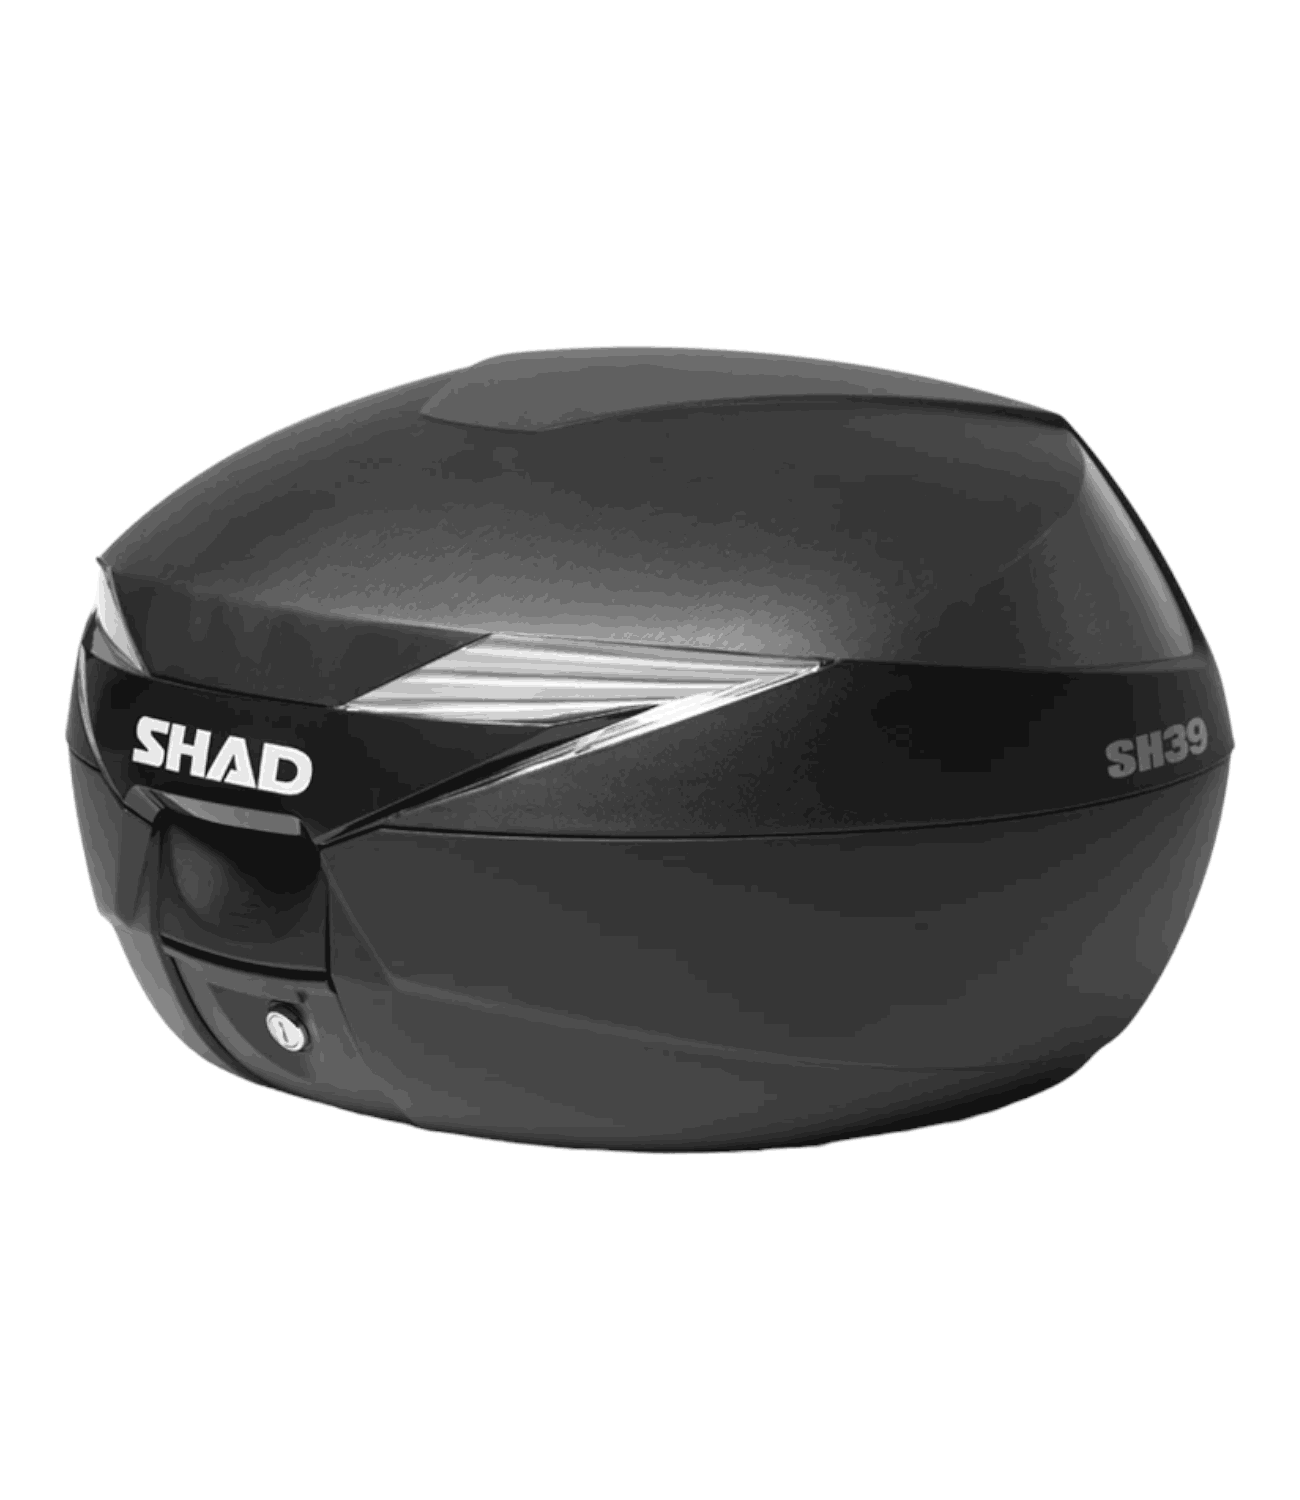 SHAD SH39 Top Box